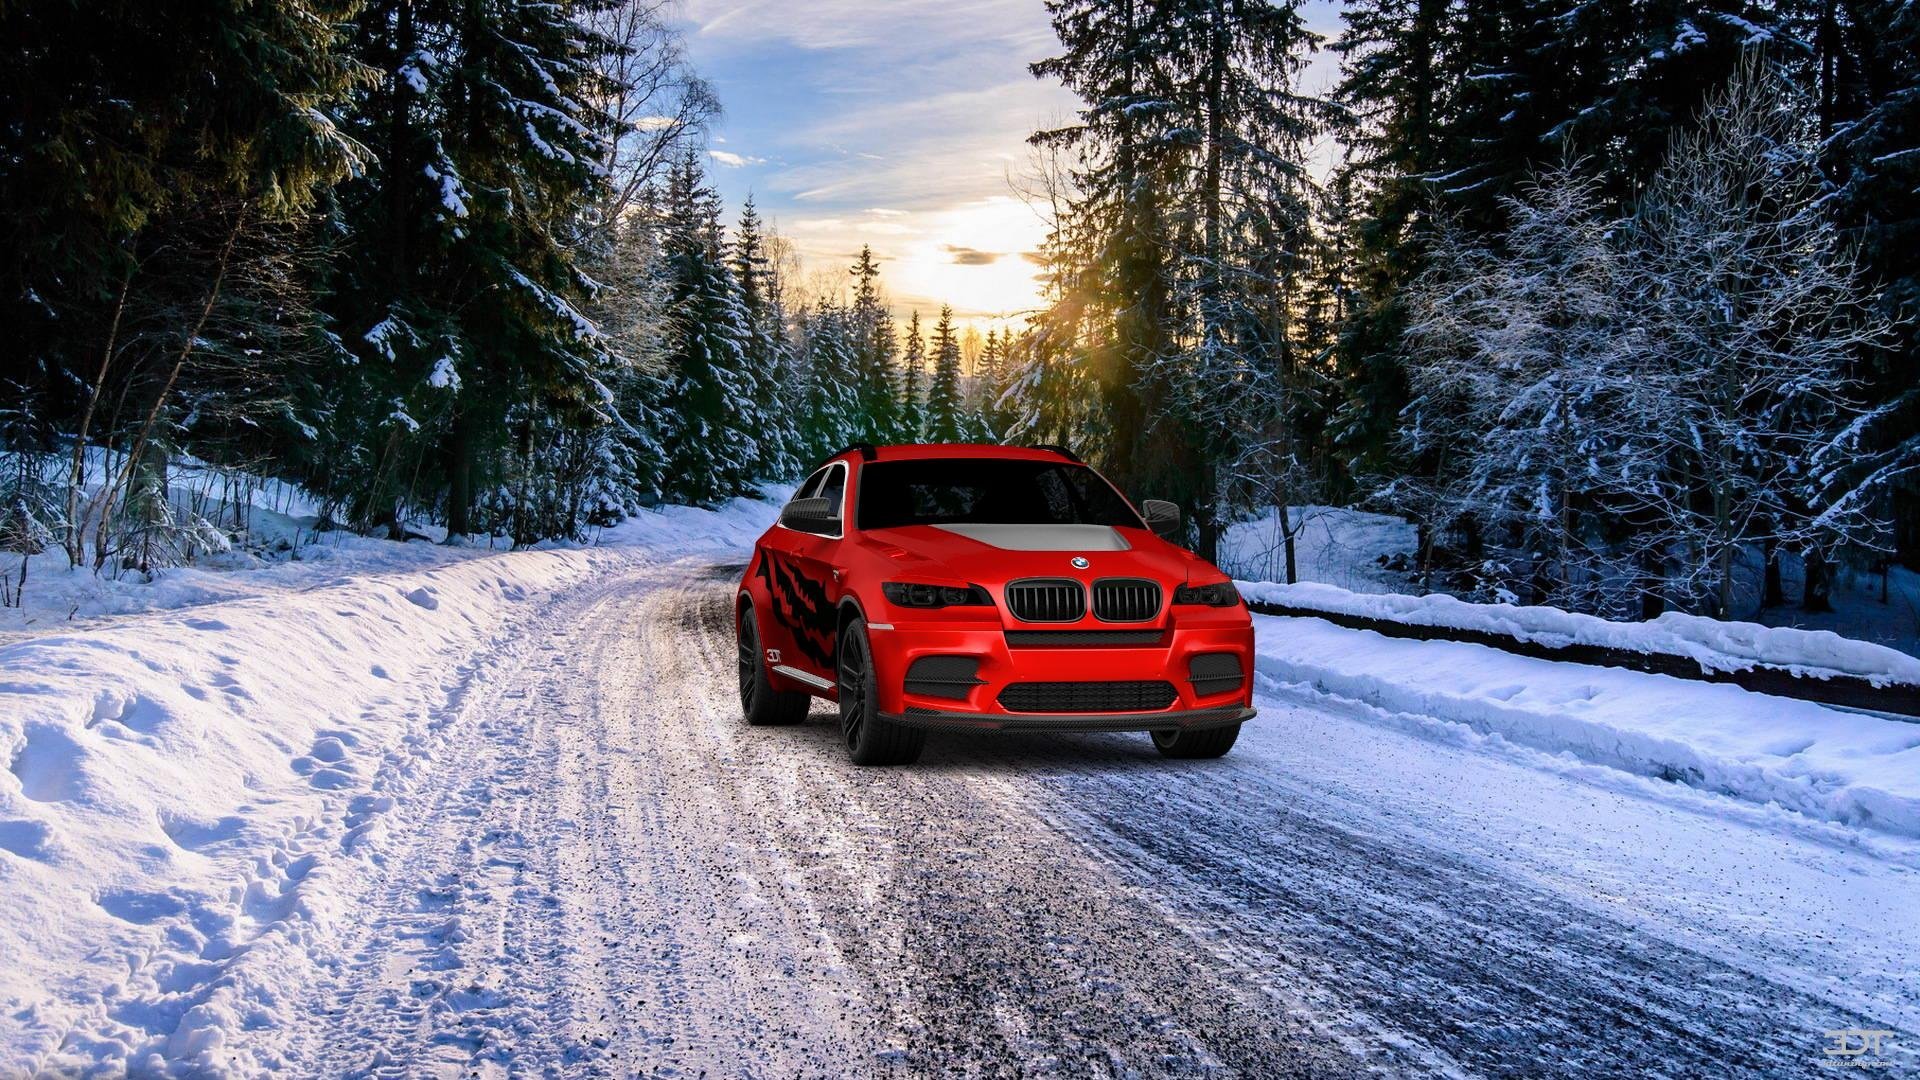 BMW x6 дрифт. БМВ х6 зима. BMW x5 дрифт. BMW x6 бездорожье. М5 зима